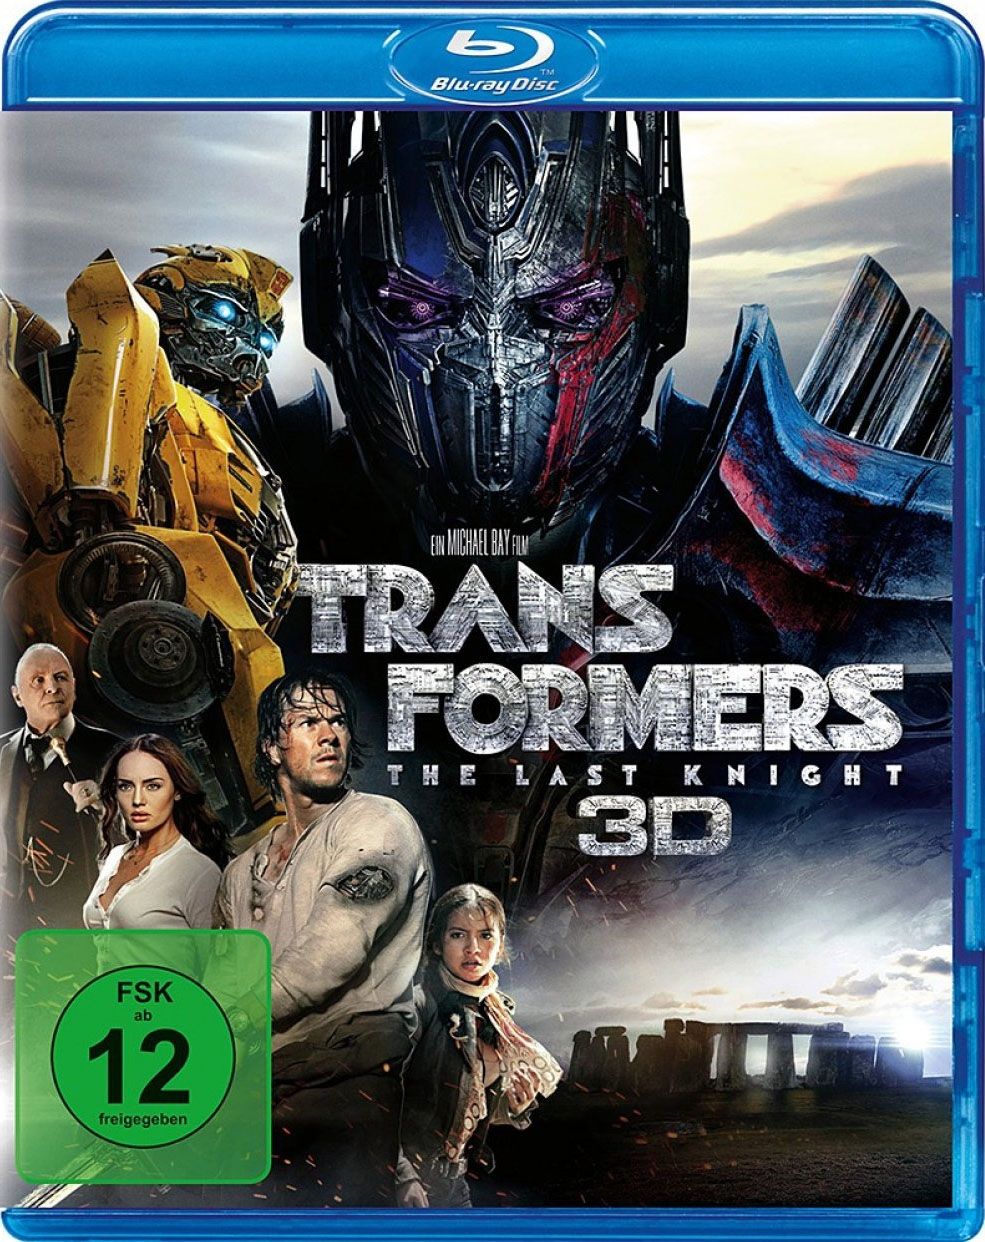 Transformers - The Last Knight 3D (3 Discs) (BLURAY 3D + BLURAY)